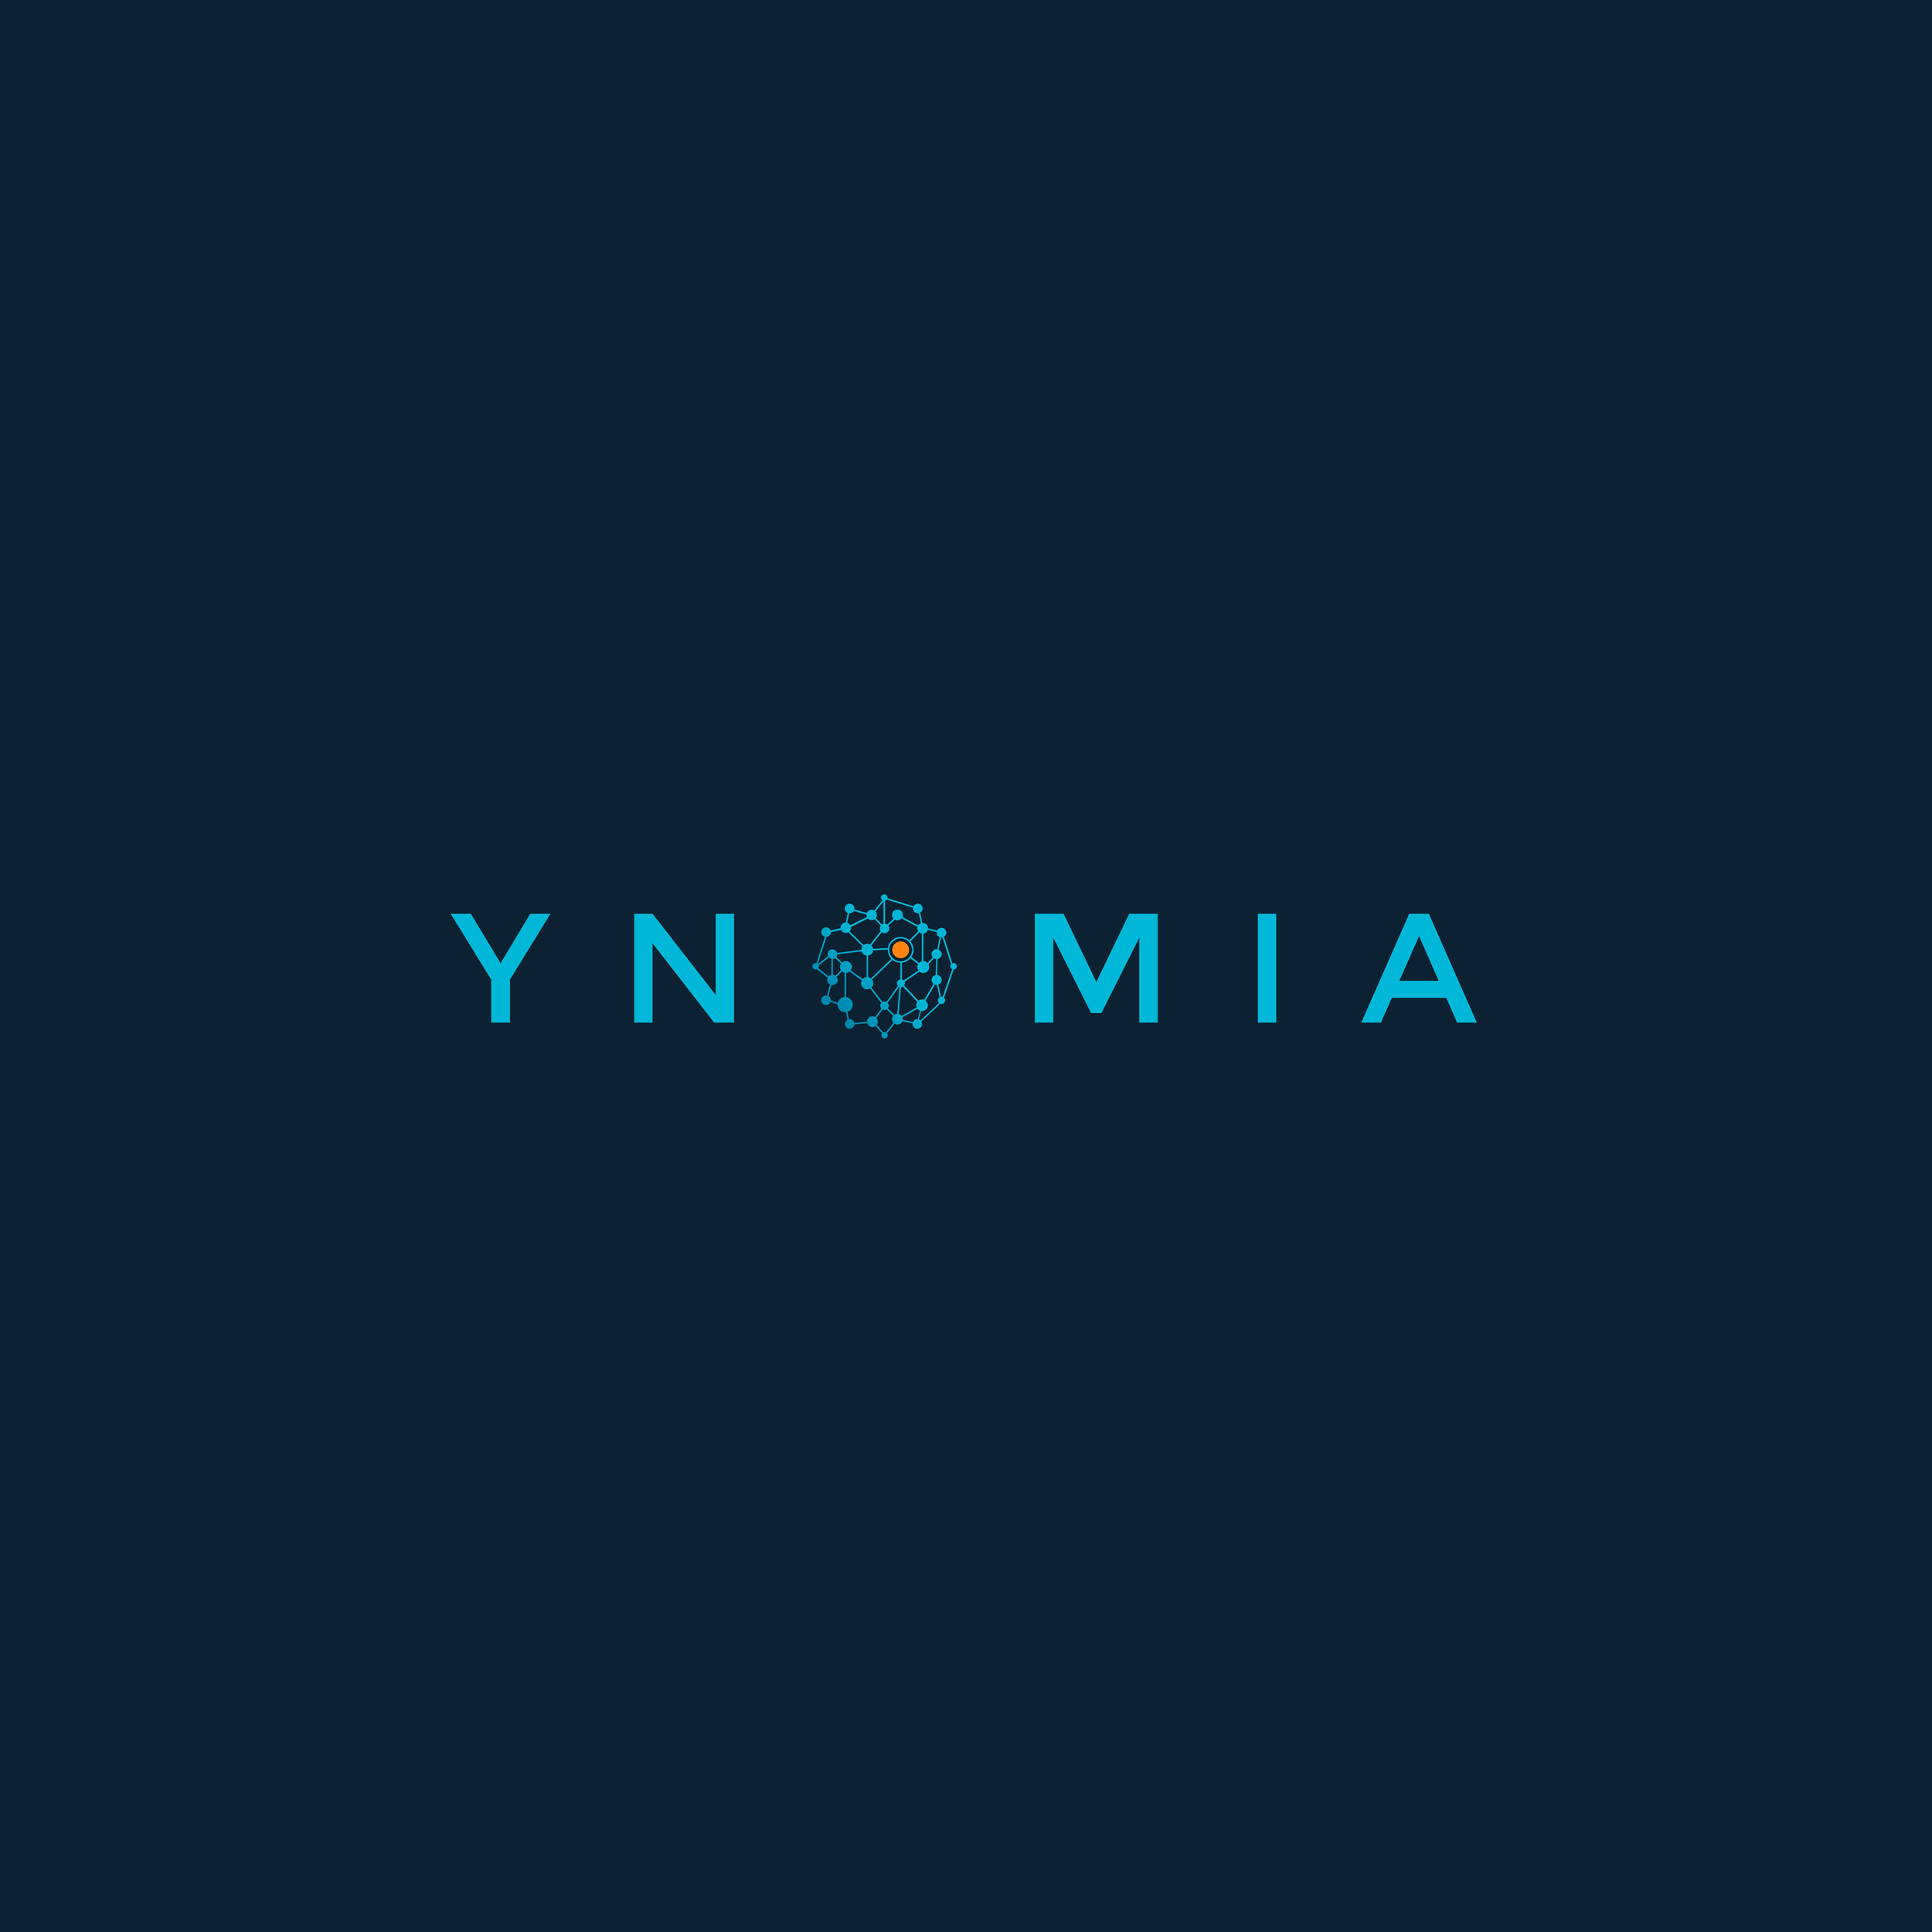 Ynomia